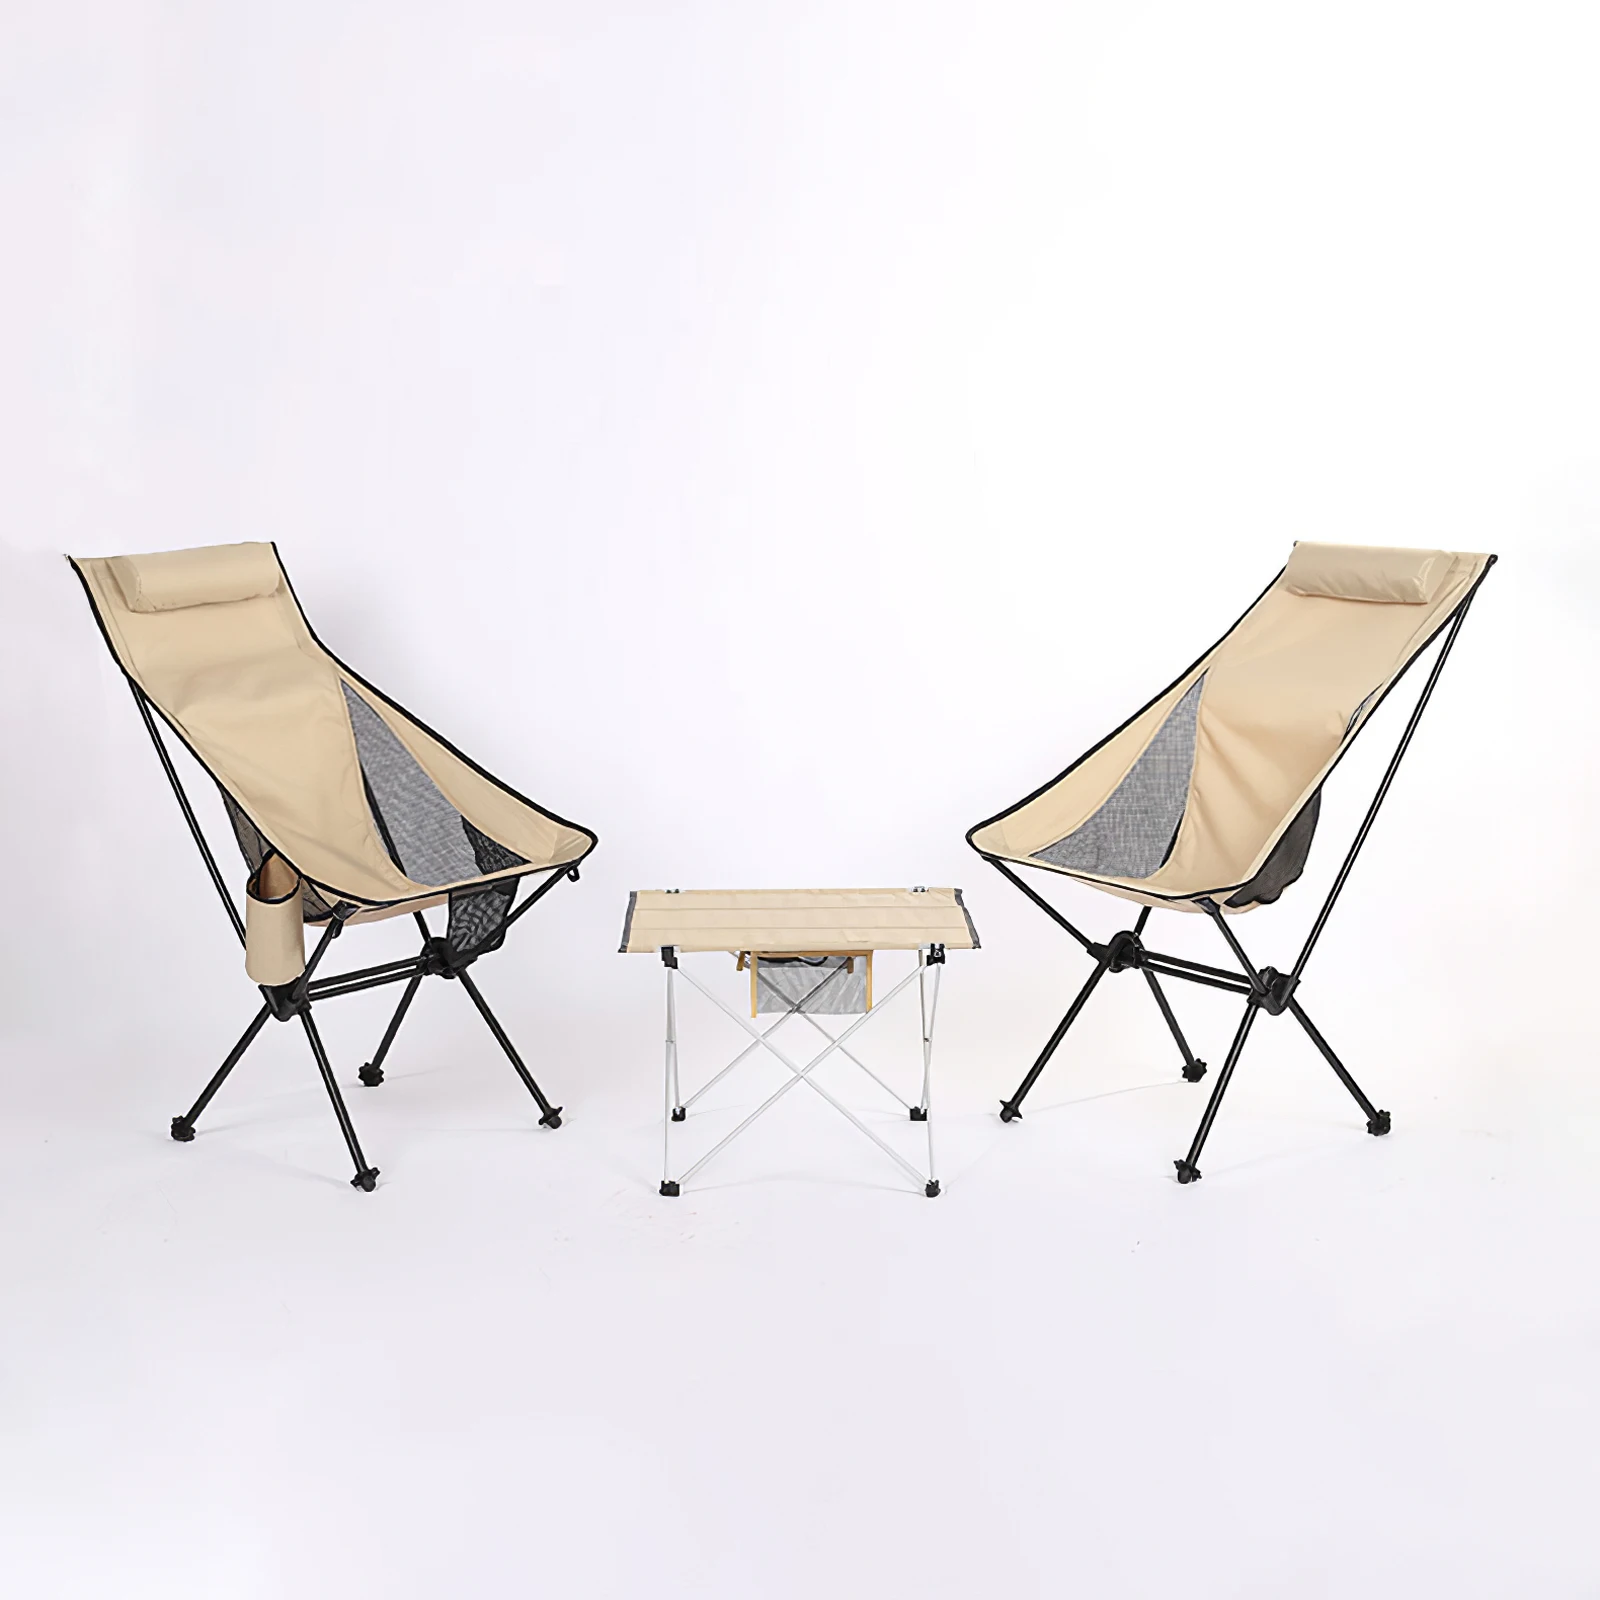 저렴한 초경량 야외 접이식 캠핑 의자, 피크닉 하이킹 여행 레저 배낭 달 관측 낚시 휴대용 의자